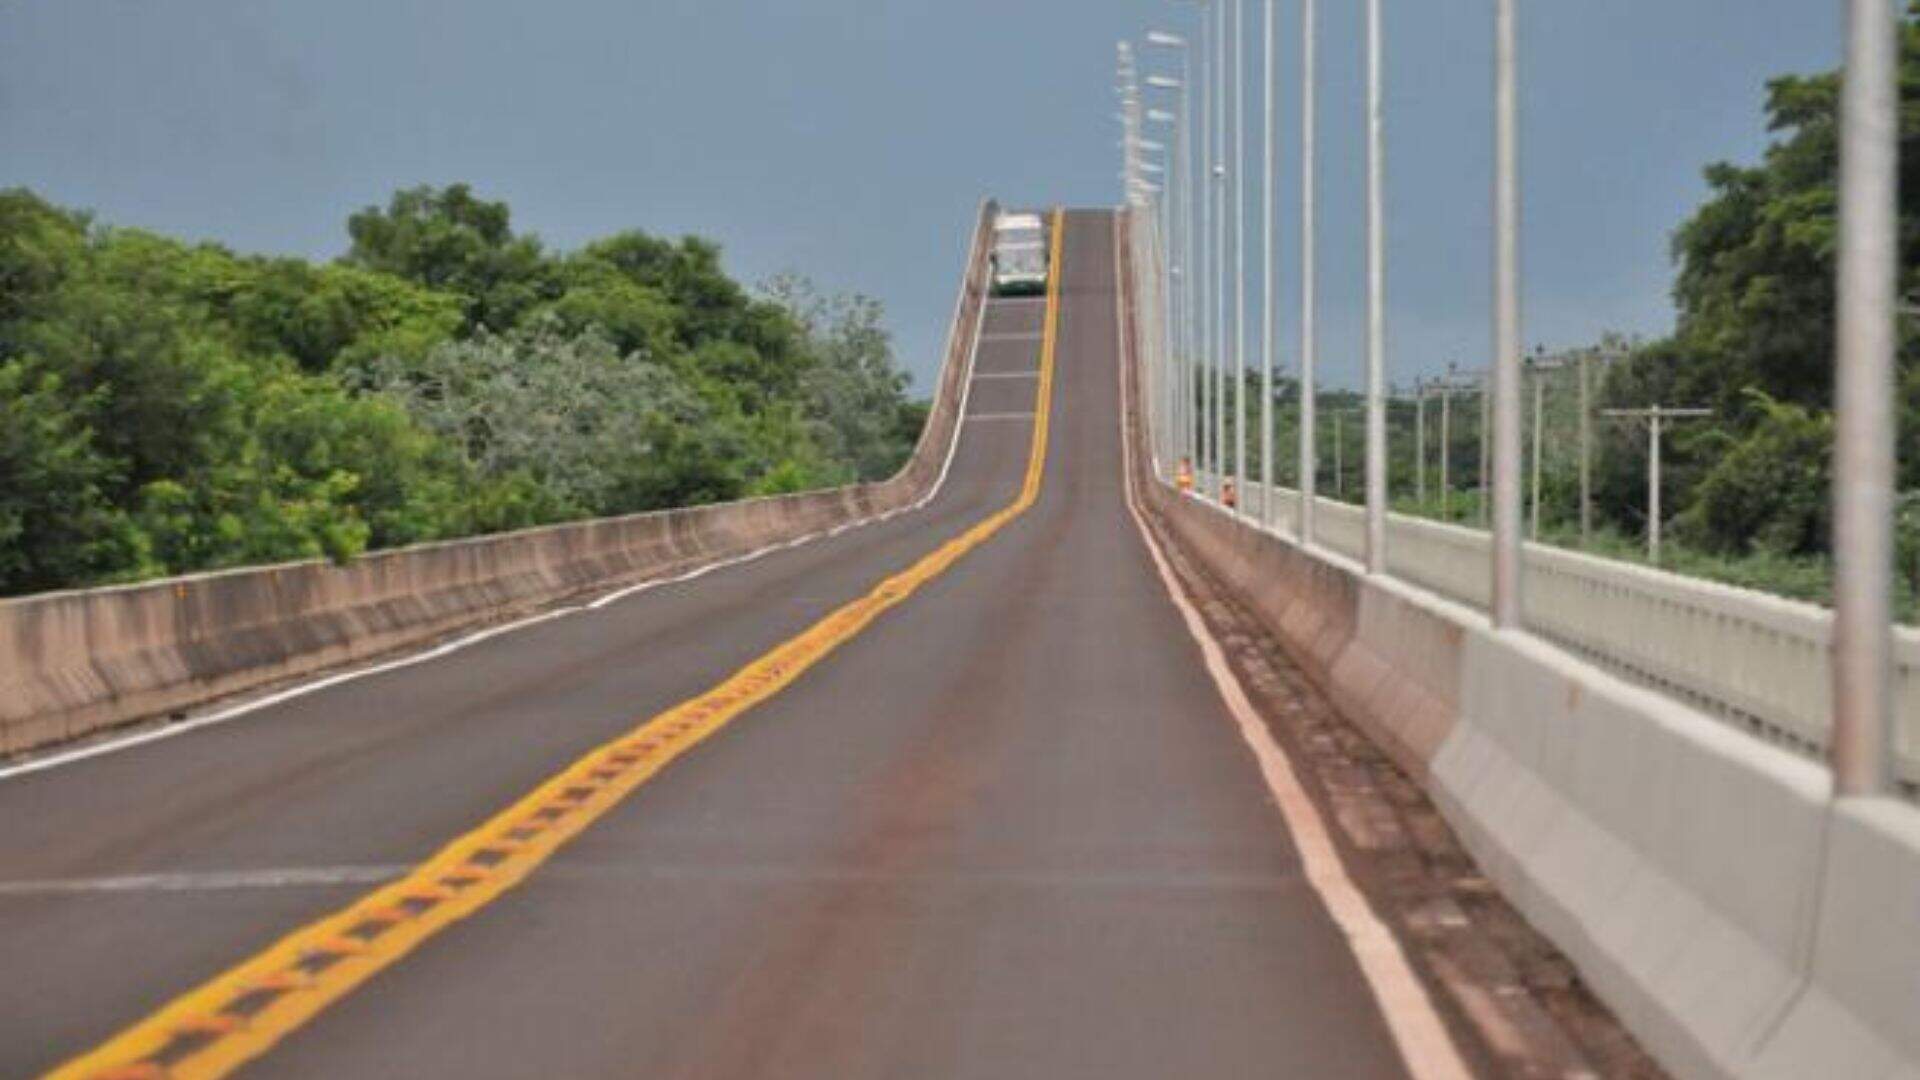 Pedágio de R$ 15,90 para carros volta a ser cobrado na ponte sobre o Rio Paraguai em MS